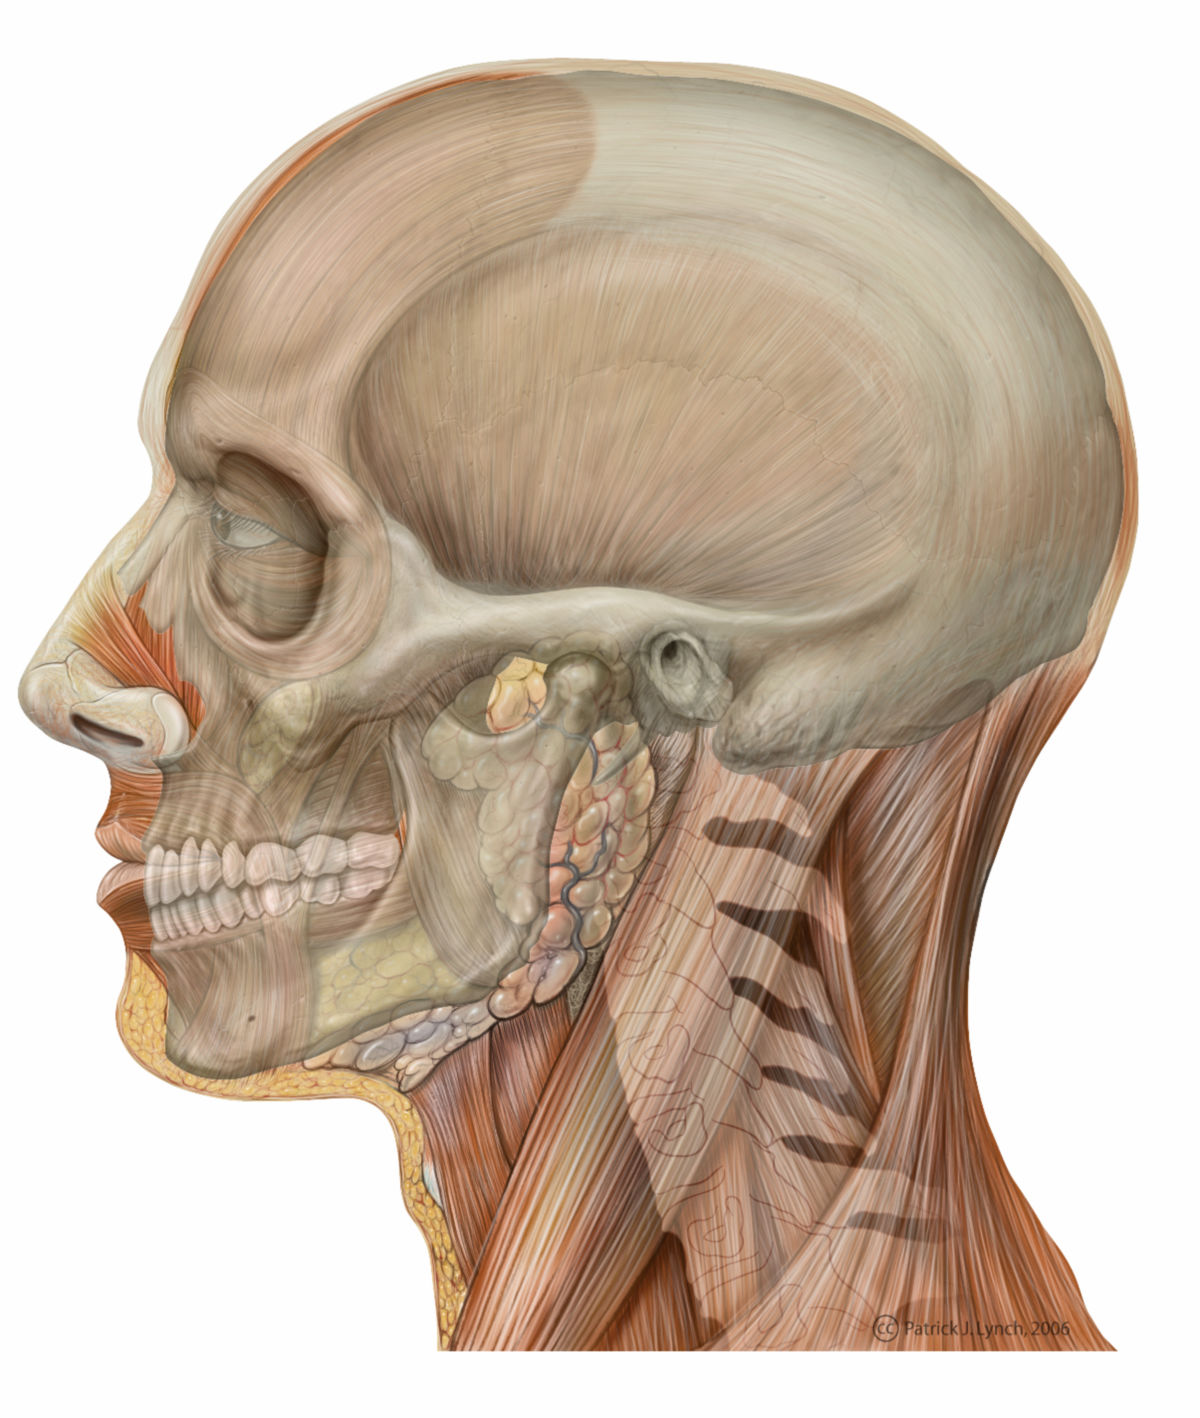 Anatomie des Kopfes (Illustration mit Schädelprojektion)